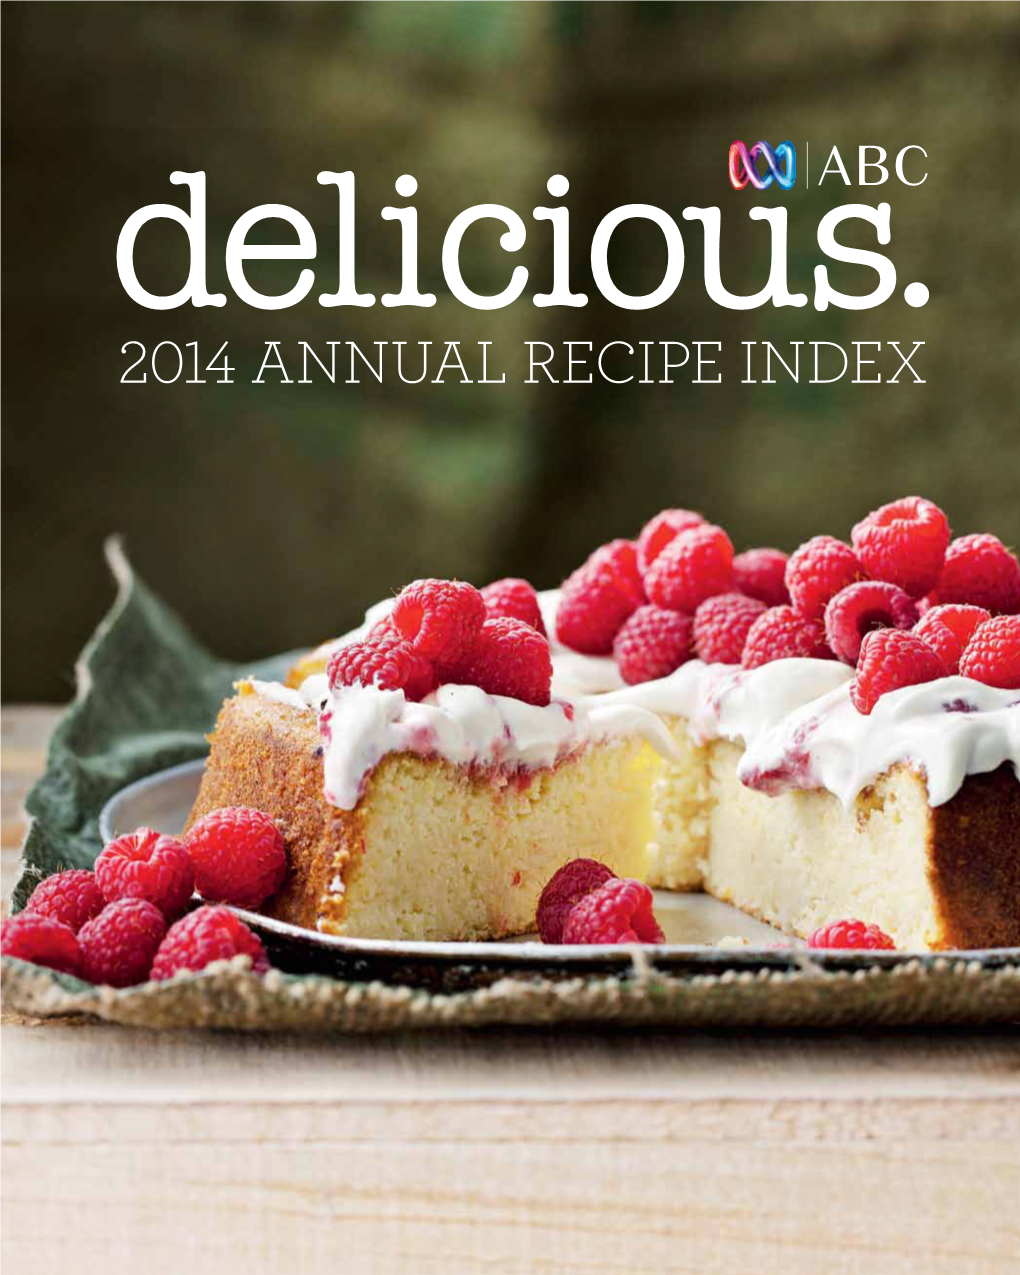 2014 Annual Recipe Index